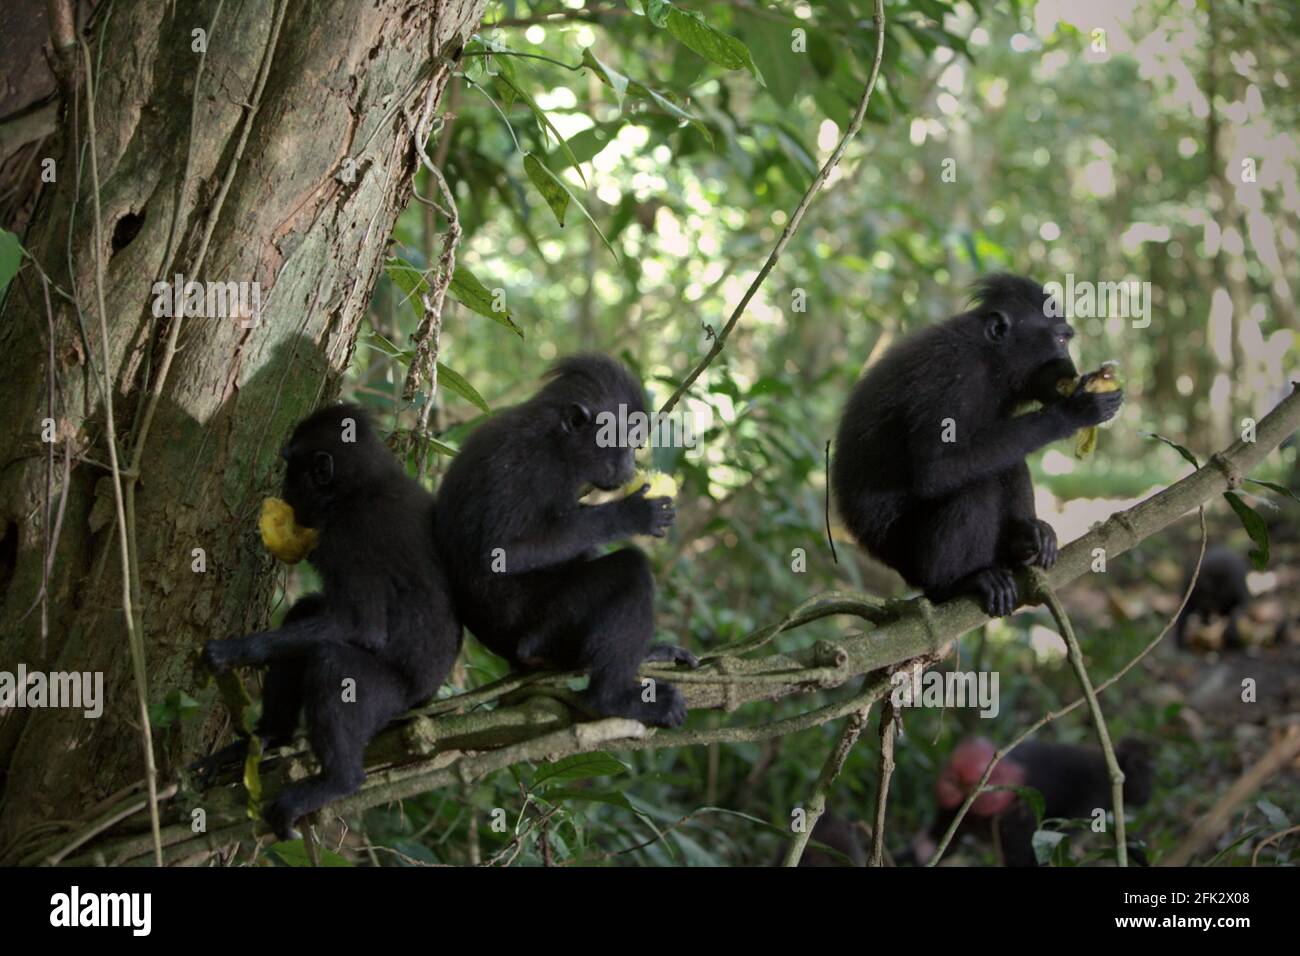 Celebes macachi crestati mangiare frutta mentre sono seduti su un ramo di albero. Piantare alberi da frutto nella zona tra foresta e paesaggio agricolo contribuirebbe a ridurre i conflitti uomo-scimmia, secondo Reyni Palohoen, coordinatore di progetto di Selamatkan Yaki (Save Yaki) all'inizio di questo mese, rispondendo all'invasione di scimmie di terreni agricoli nella reggenza del Minahasa meridionale, Sulawesi settentrionale, Indonesia. Foto Stock